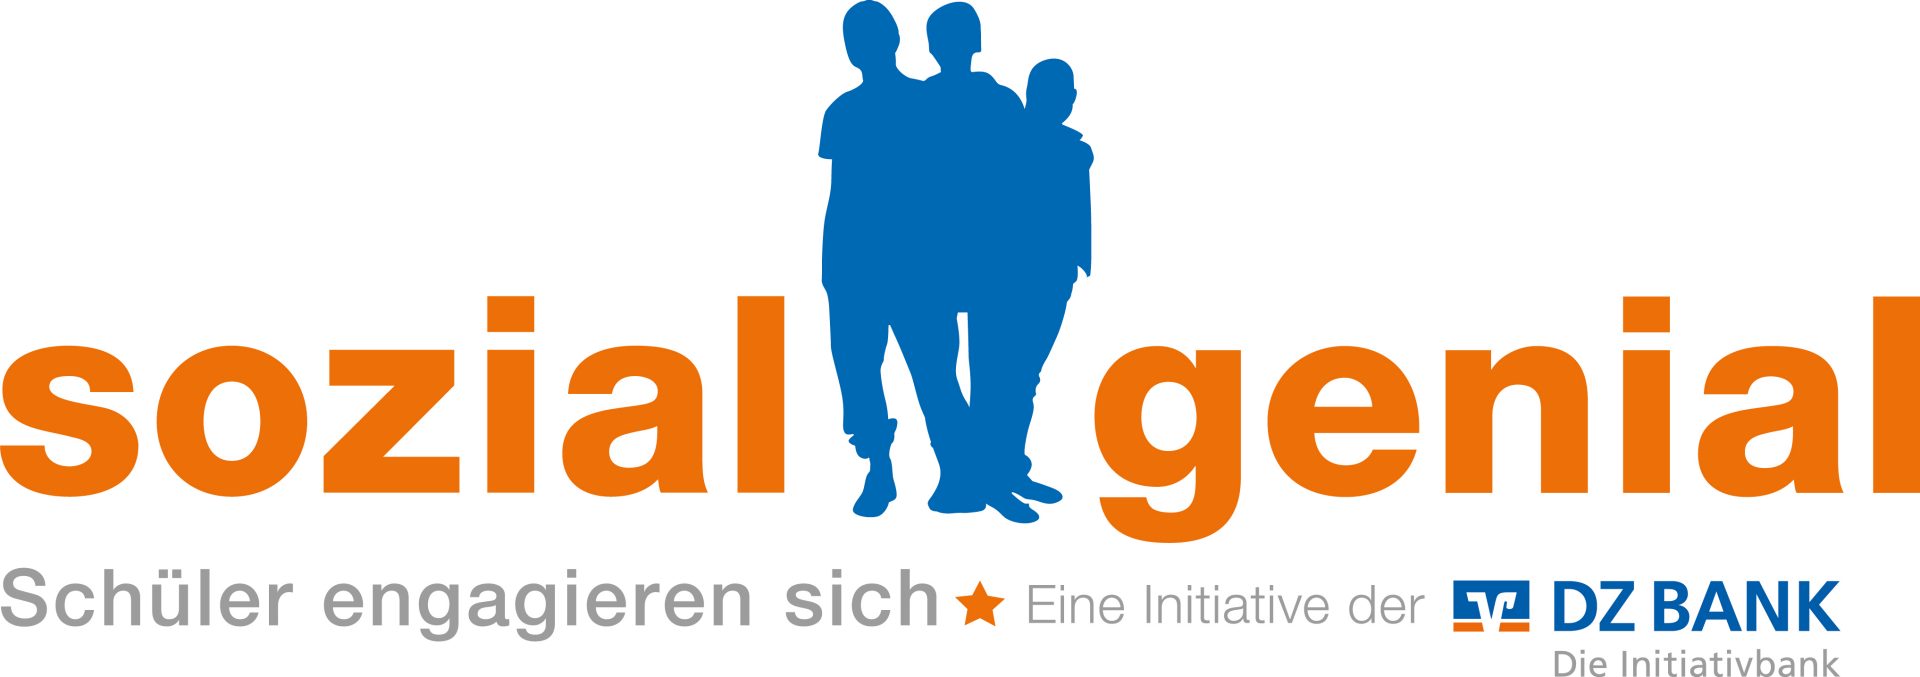 Logo sozialgenial - Schüler engagieren sich